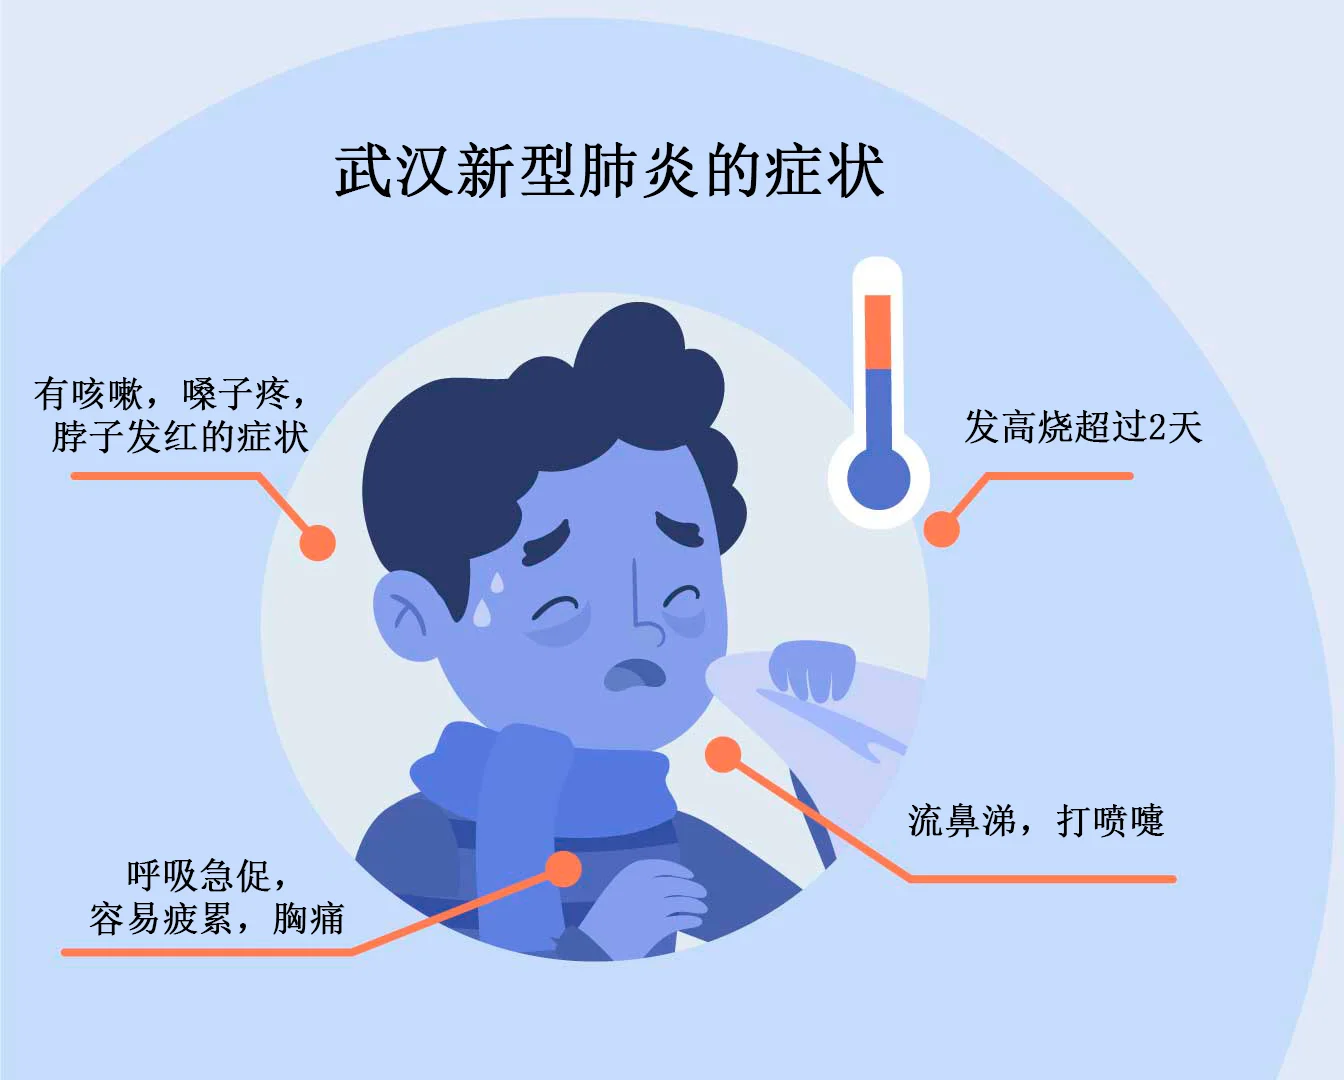 เชื้อไวรัสโคโรน่าภาษาจีน #1